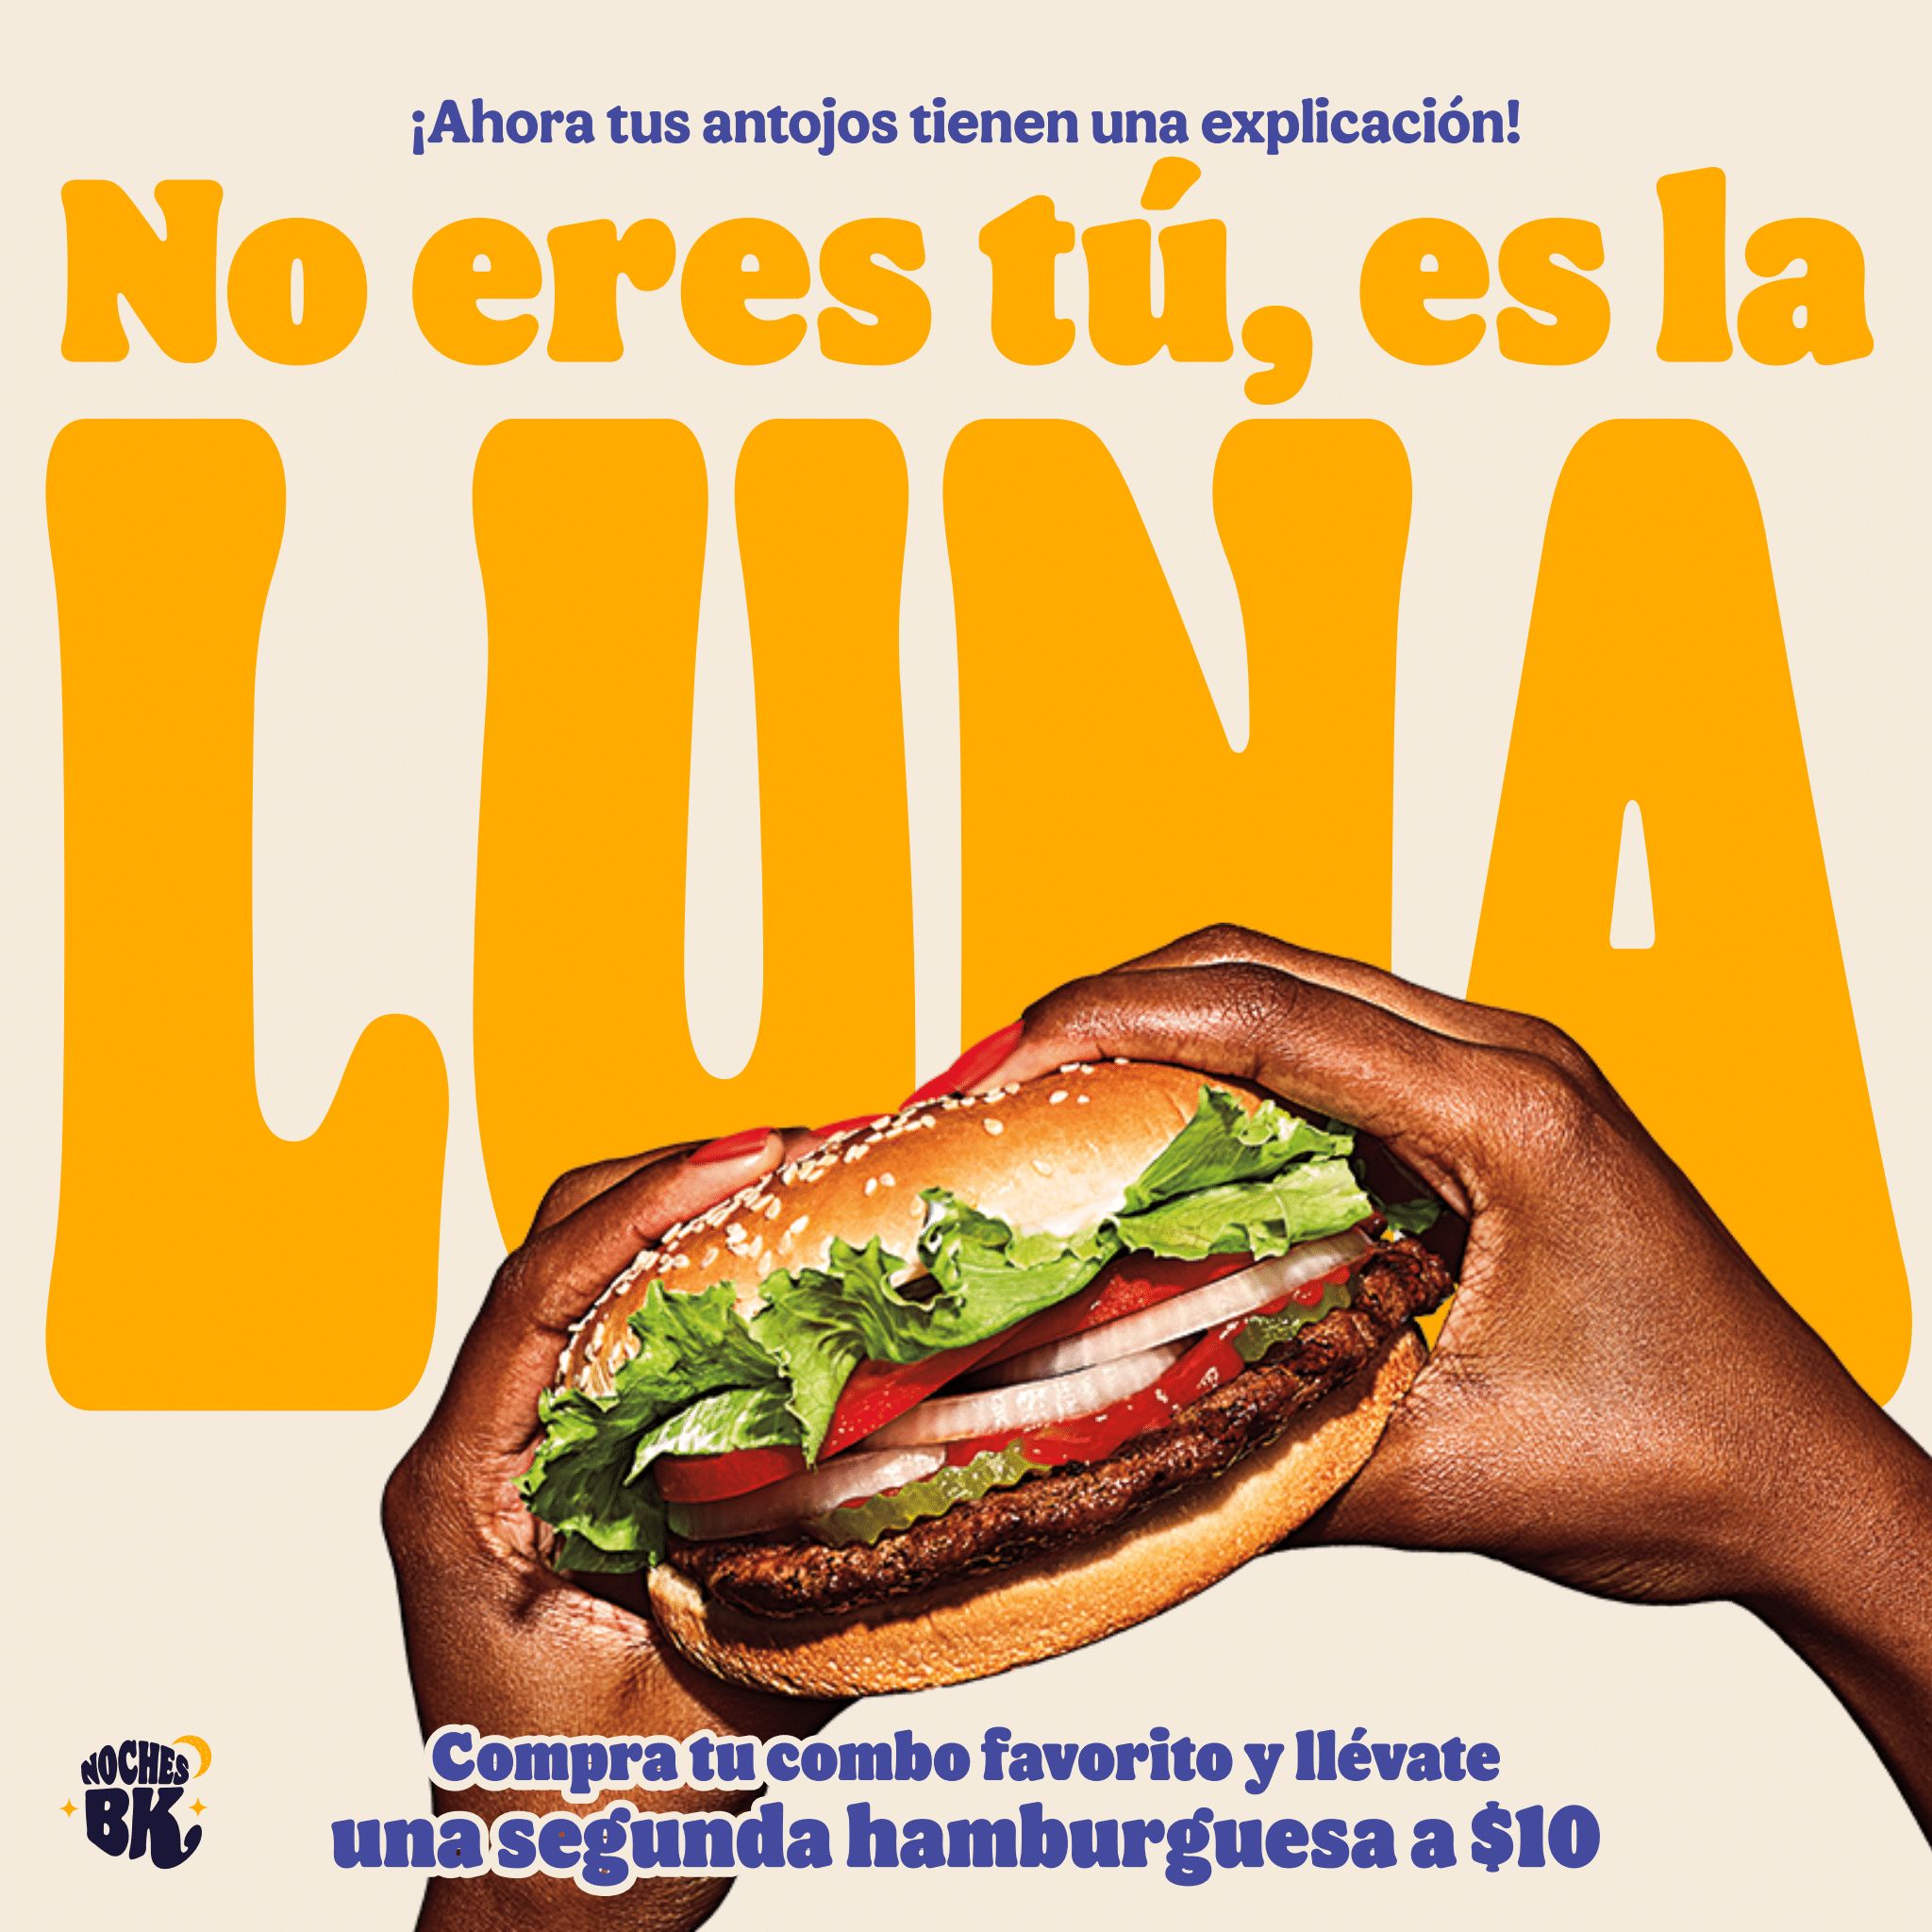 Burger King y su hamburguesa para los signos zodiacales; así es la promoción donde adquiriendo un combo podrás llevarte otra del menú por $10